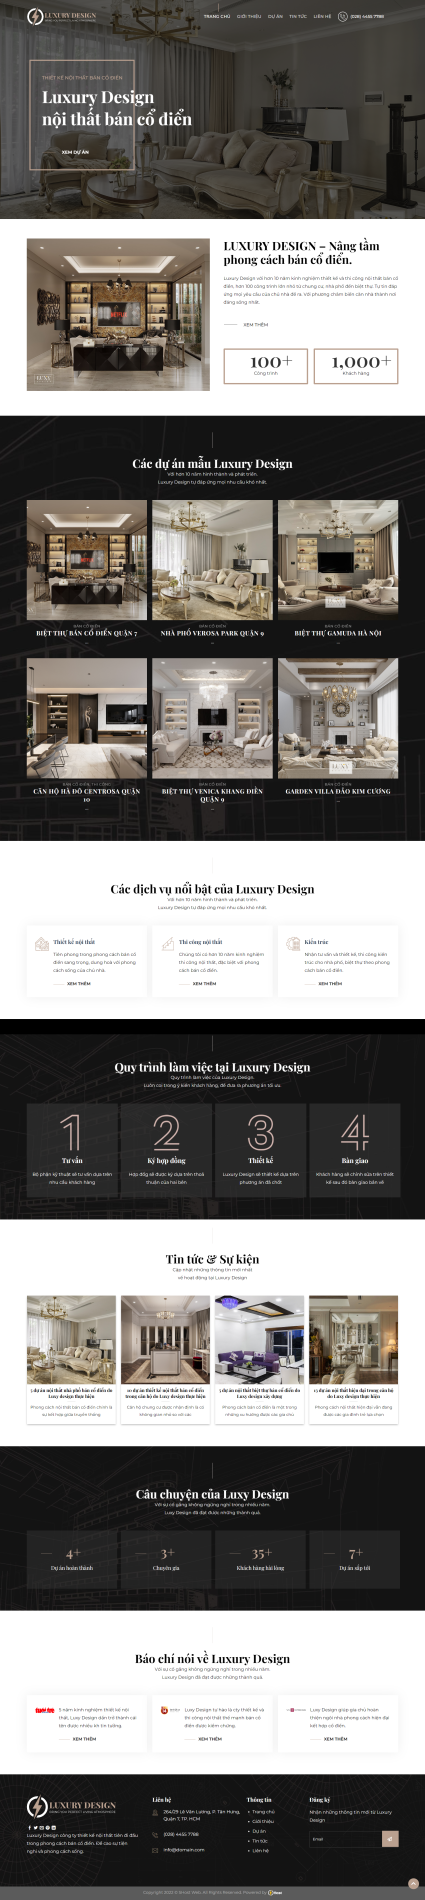 Mẫu website Thiết kế nội thất Luxury Design 7